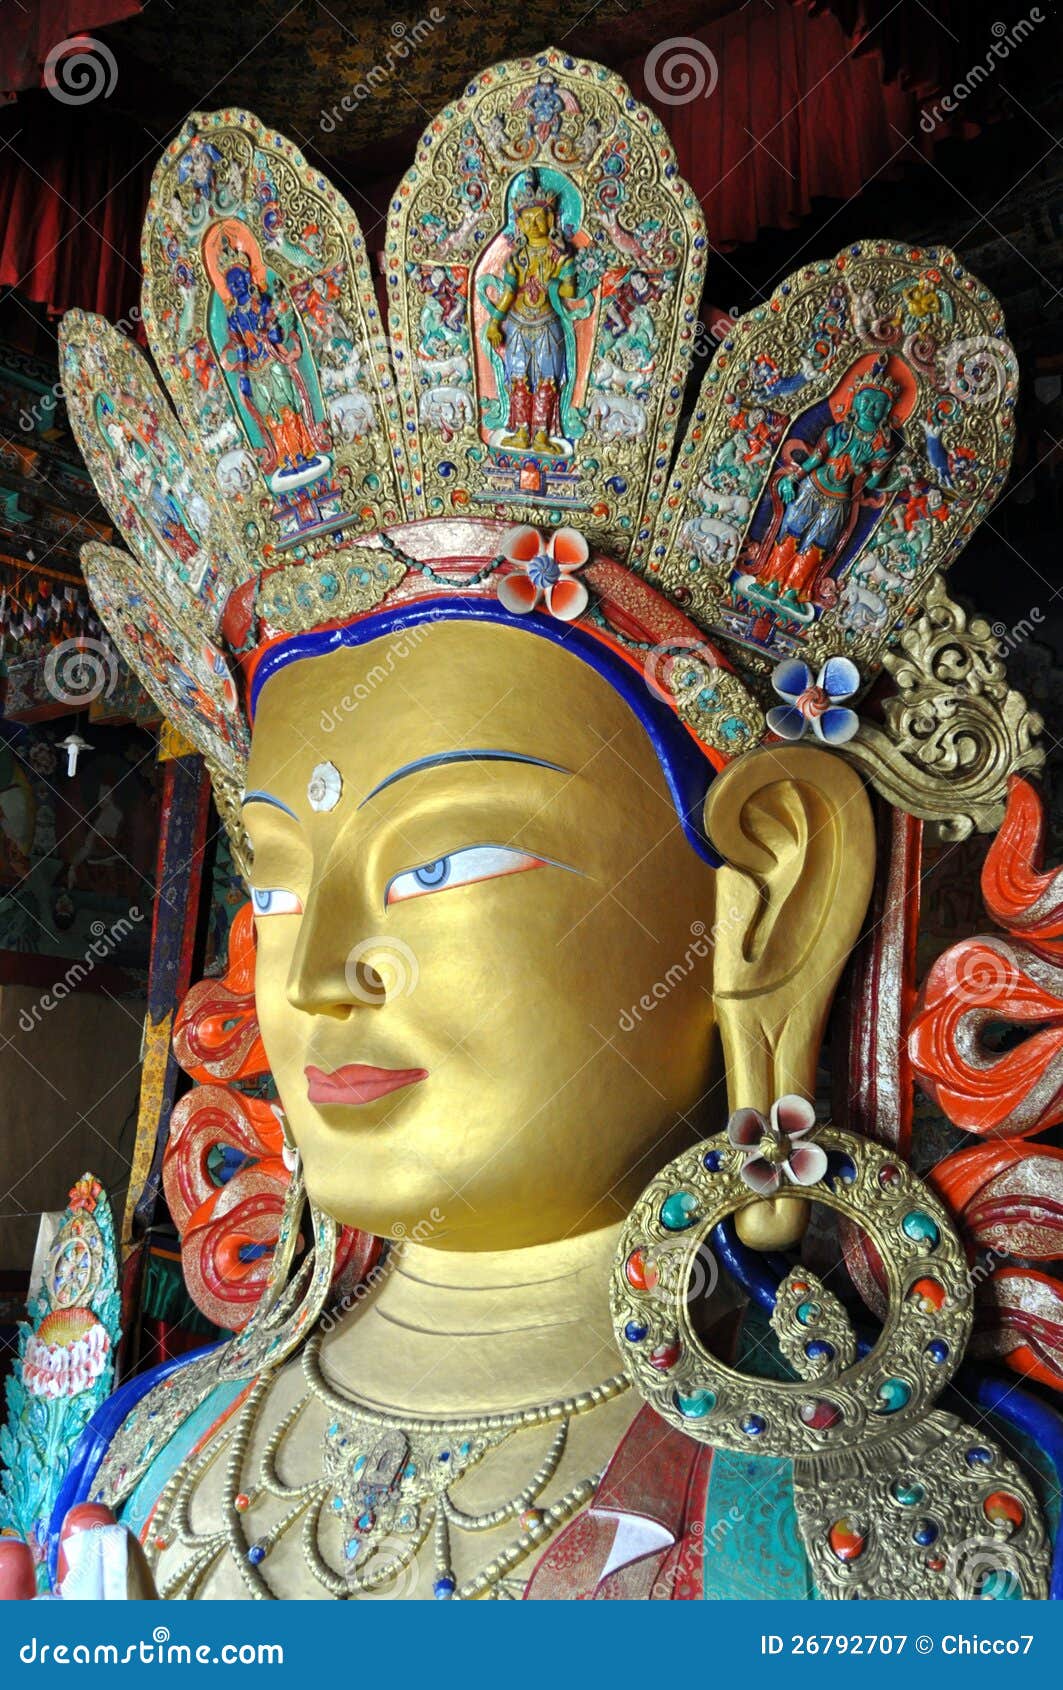 maitreya - future buddha statue from ladakh